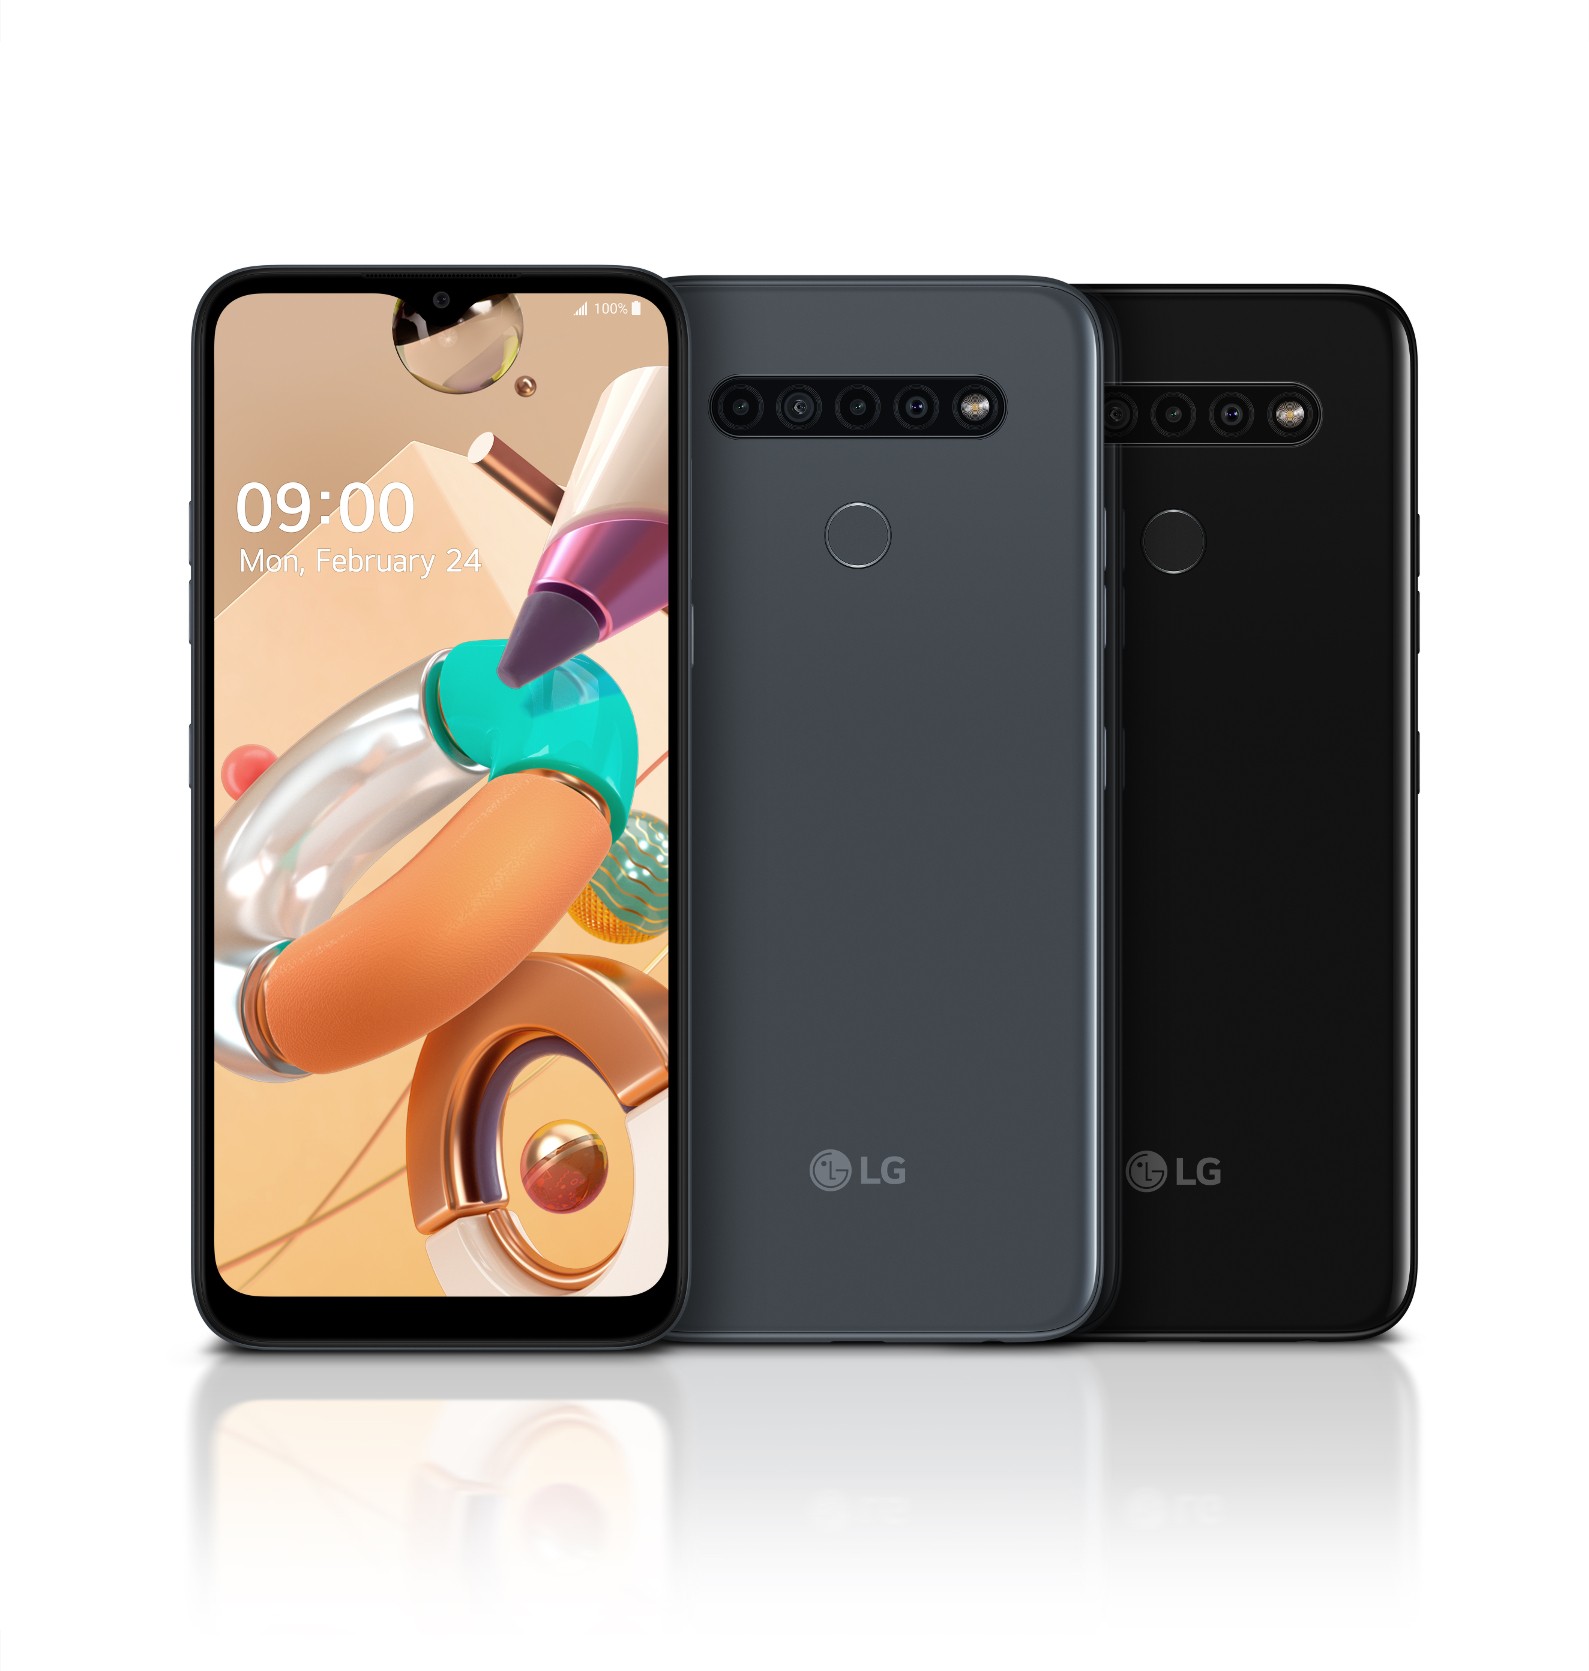 LG K61, LG K51S, and LG K41S launch with 6.5'' screens and quad